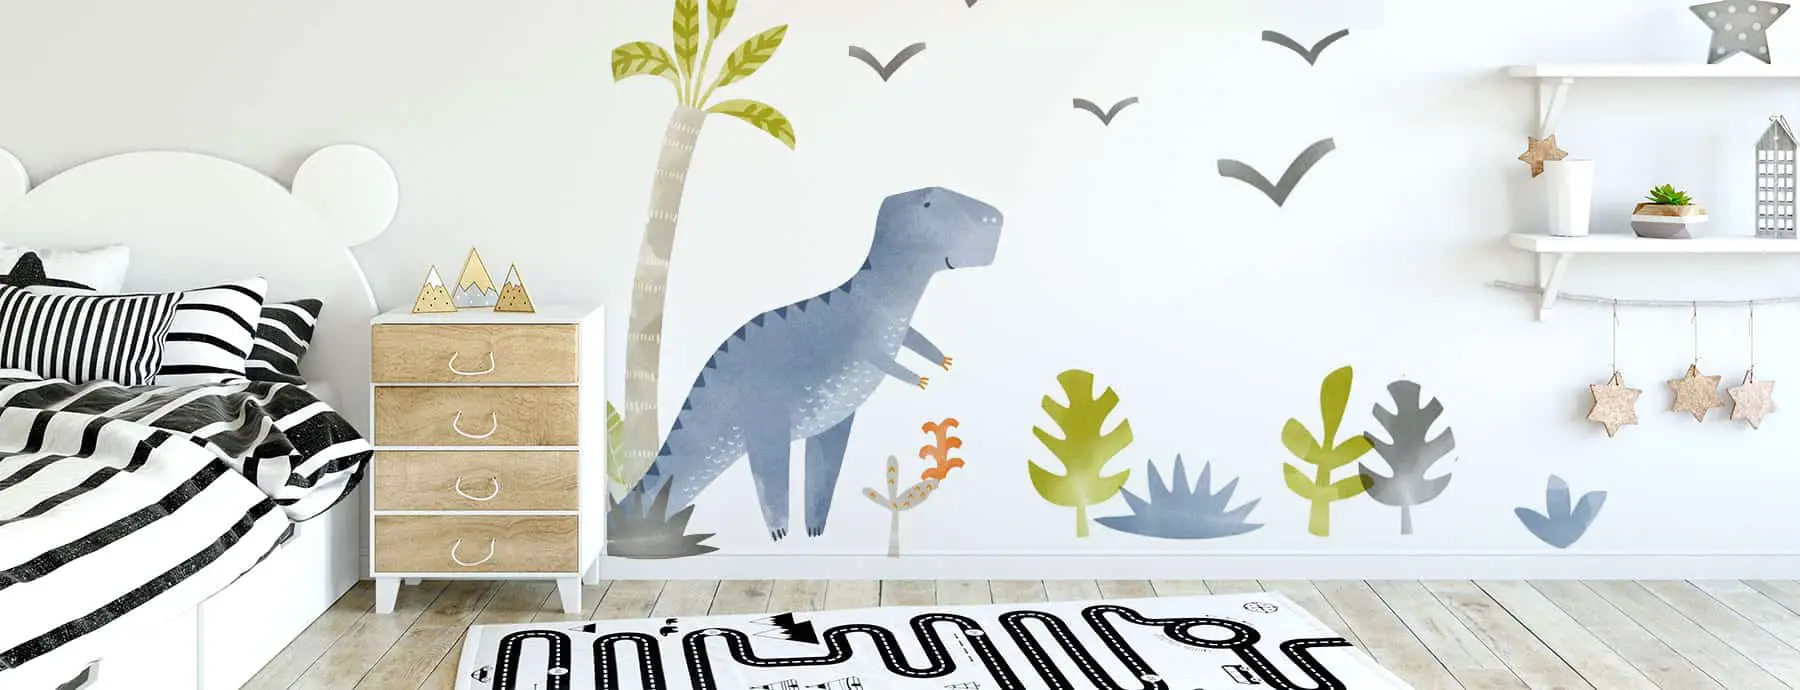 3D Dinosaur  Head Wall Art Sticker Kids Boys Bedroom Vinyl Mural Decal